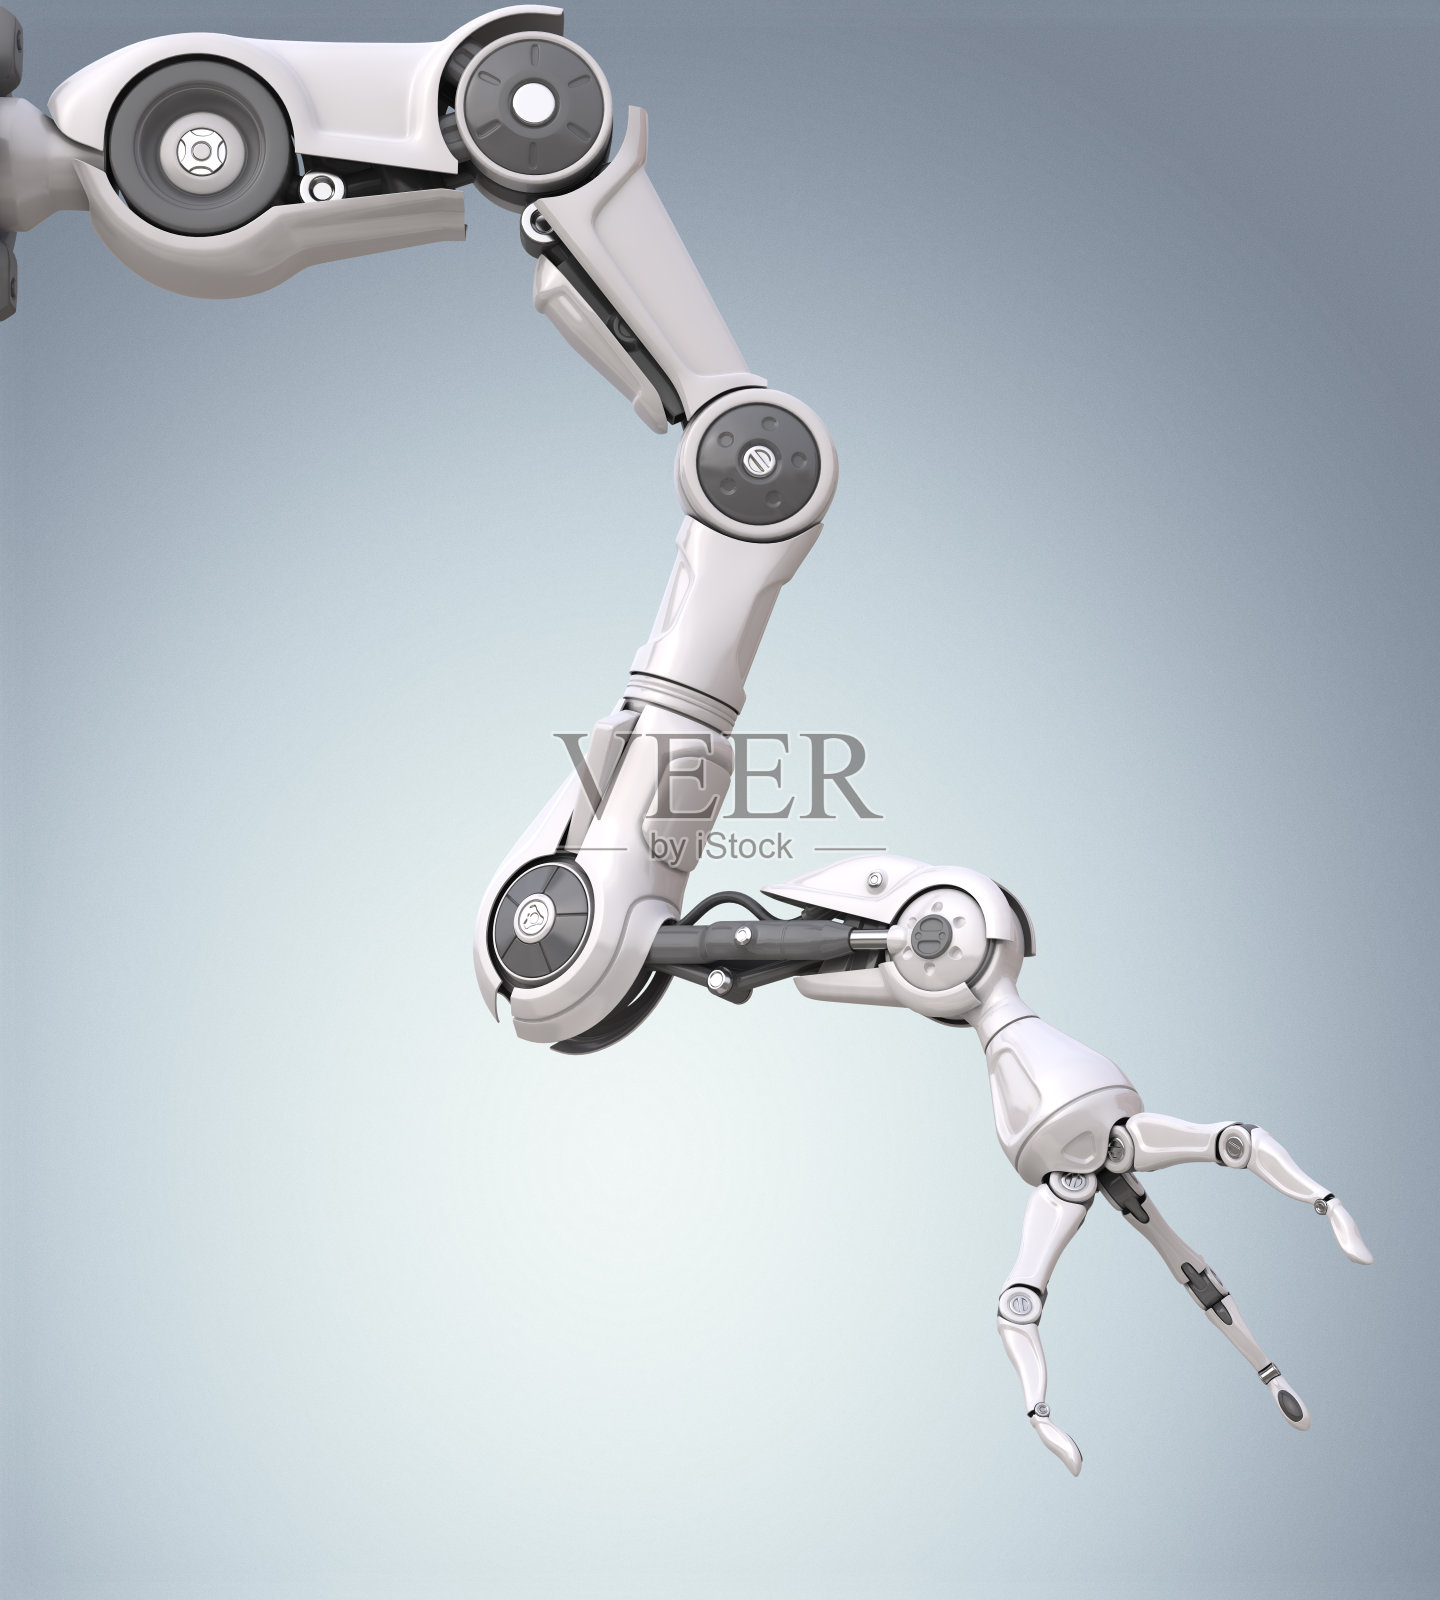 具有机械痉挛功能的未来机器人手臂照片摄影图片